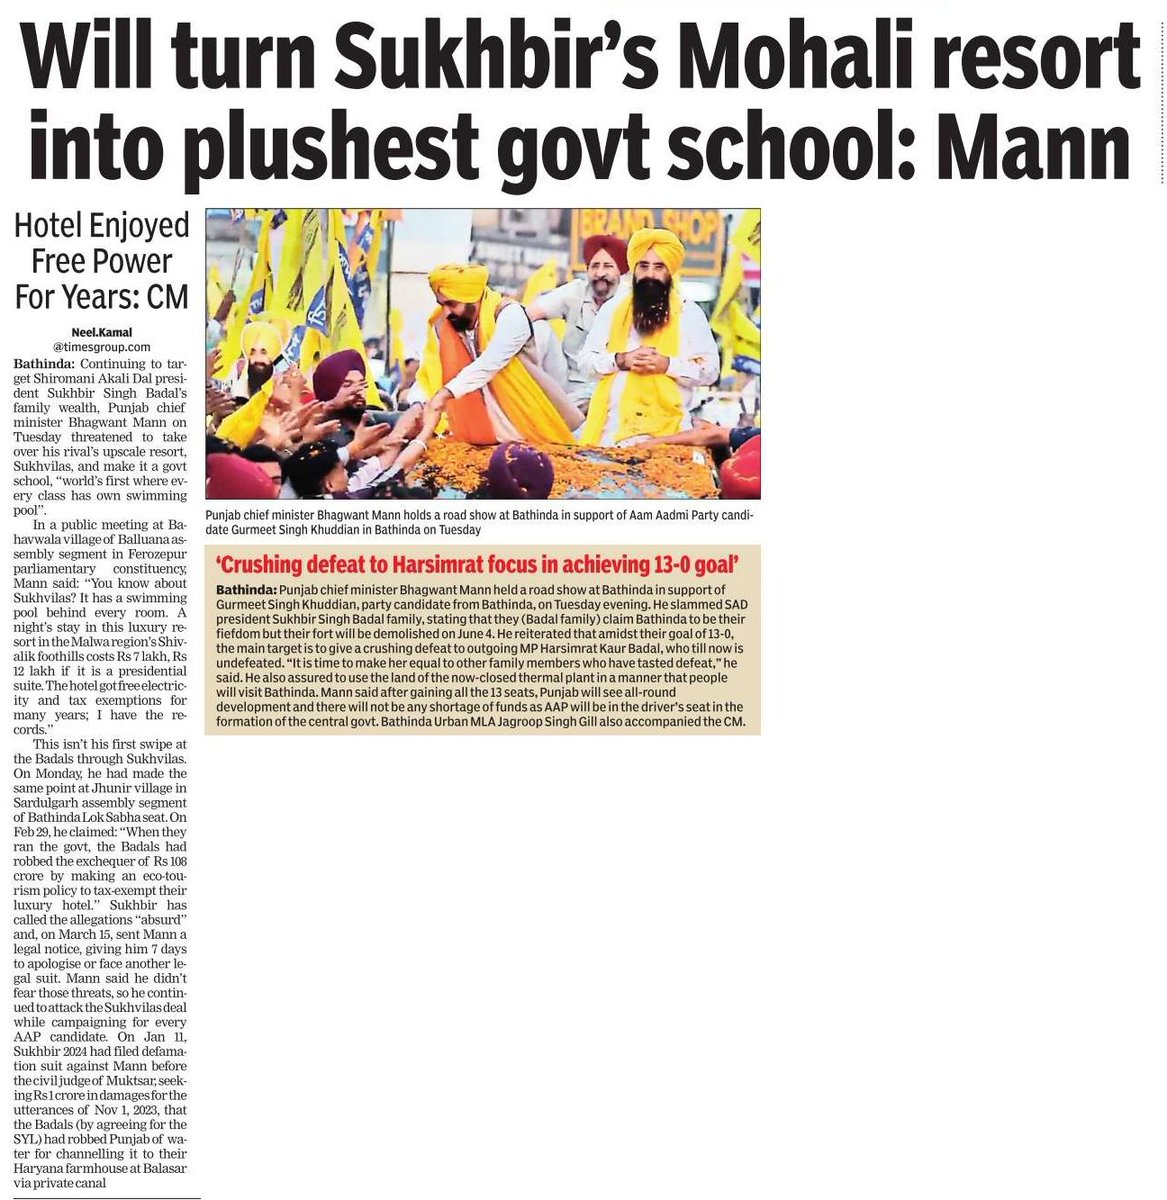 Will turn Sukhbir's Mohali resort into plushest govt school: Mann
Hotel Enjoyed Free Power For Years: CM